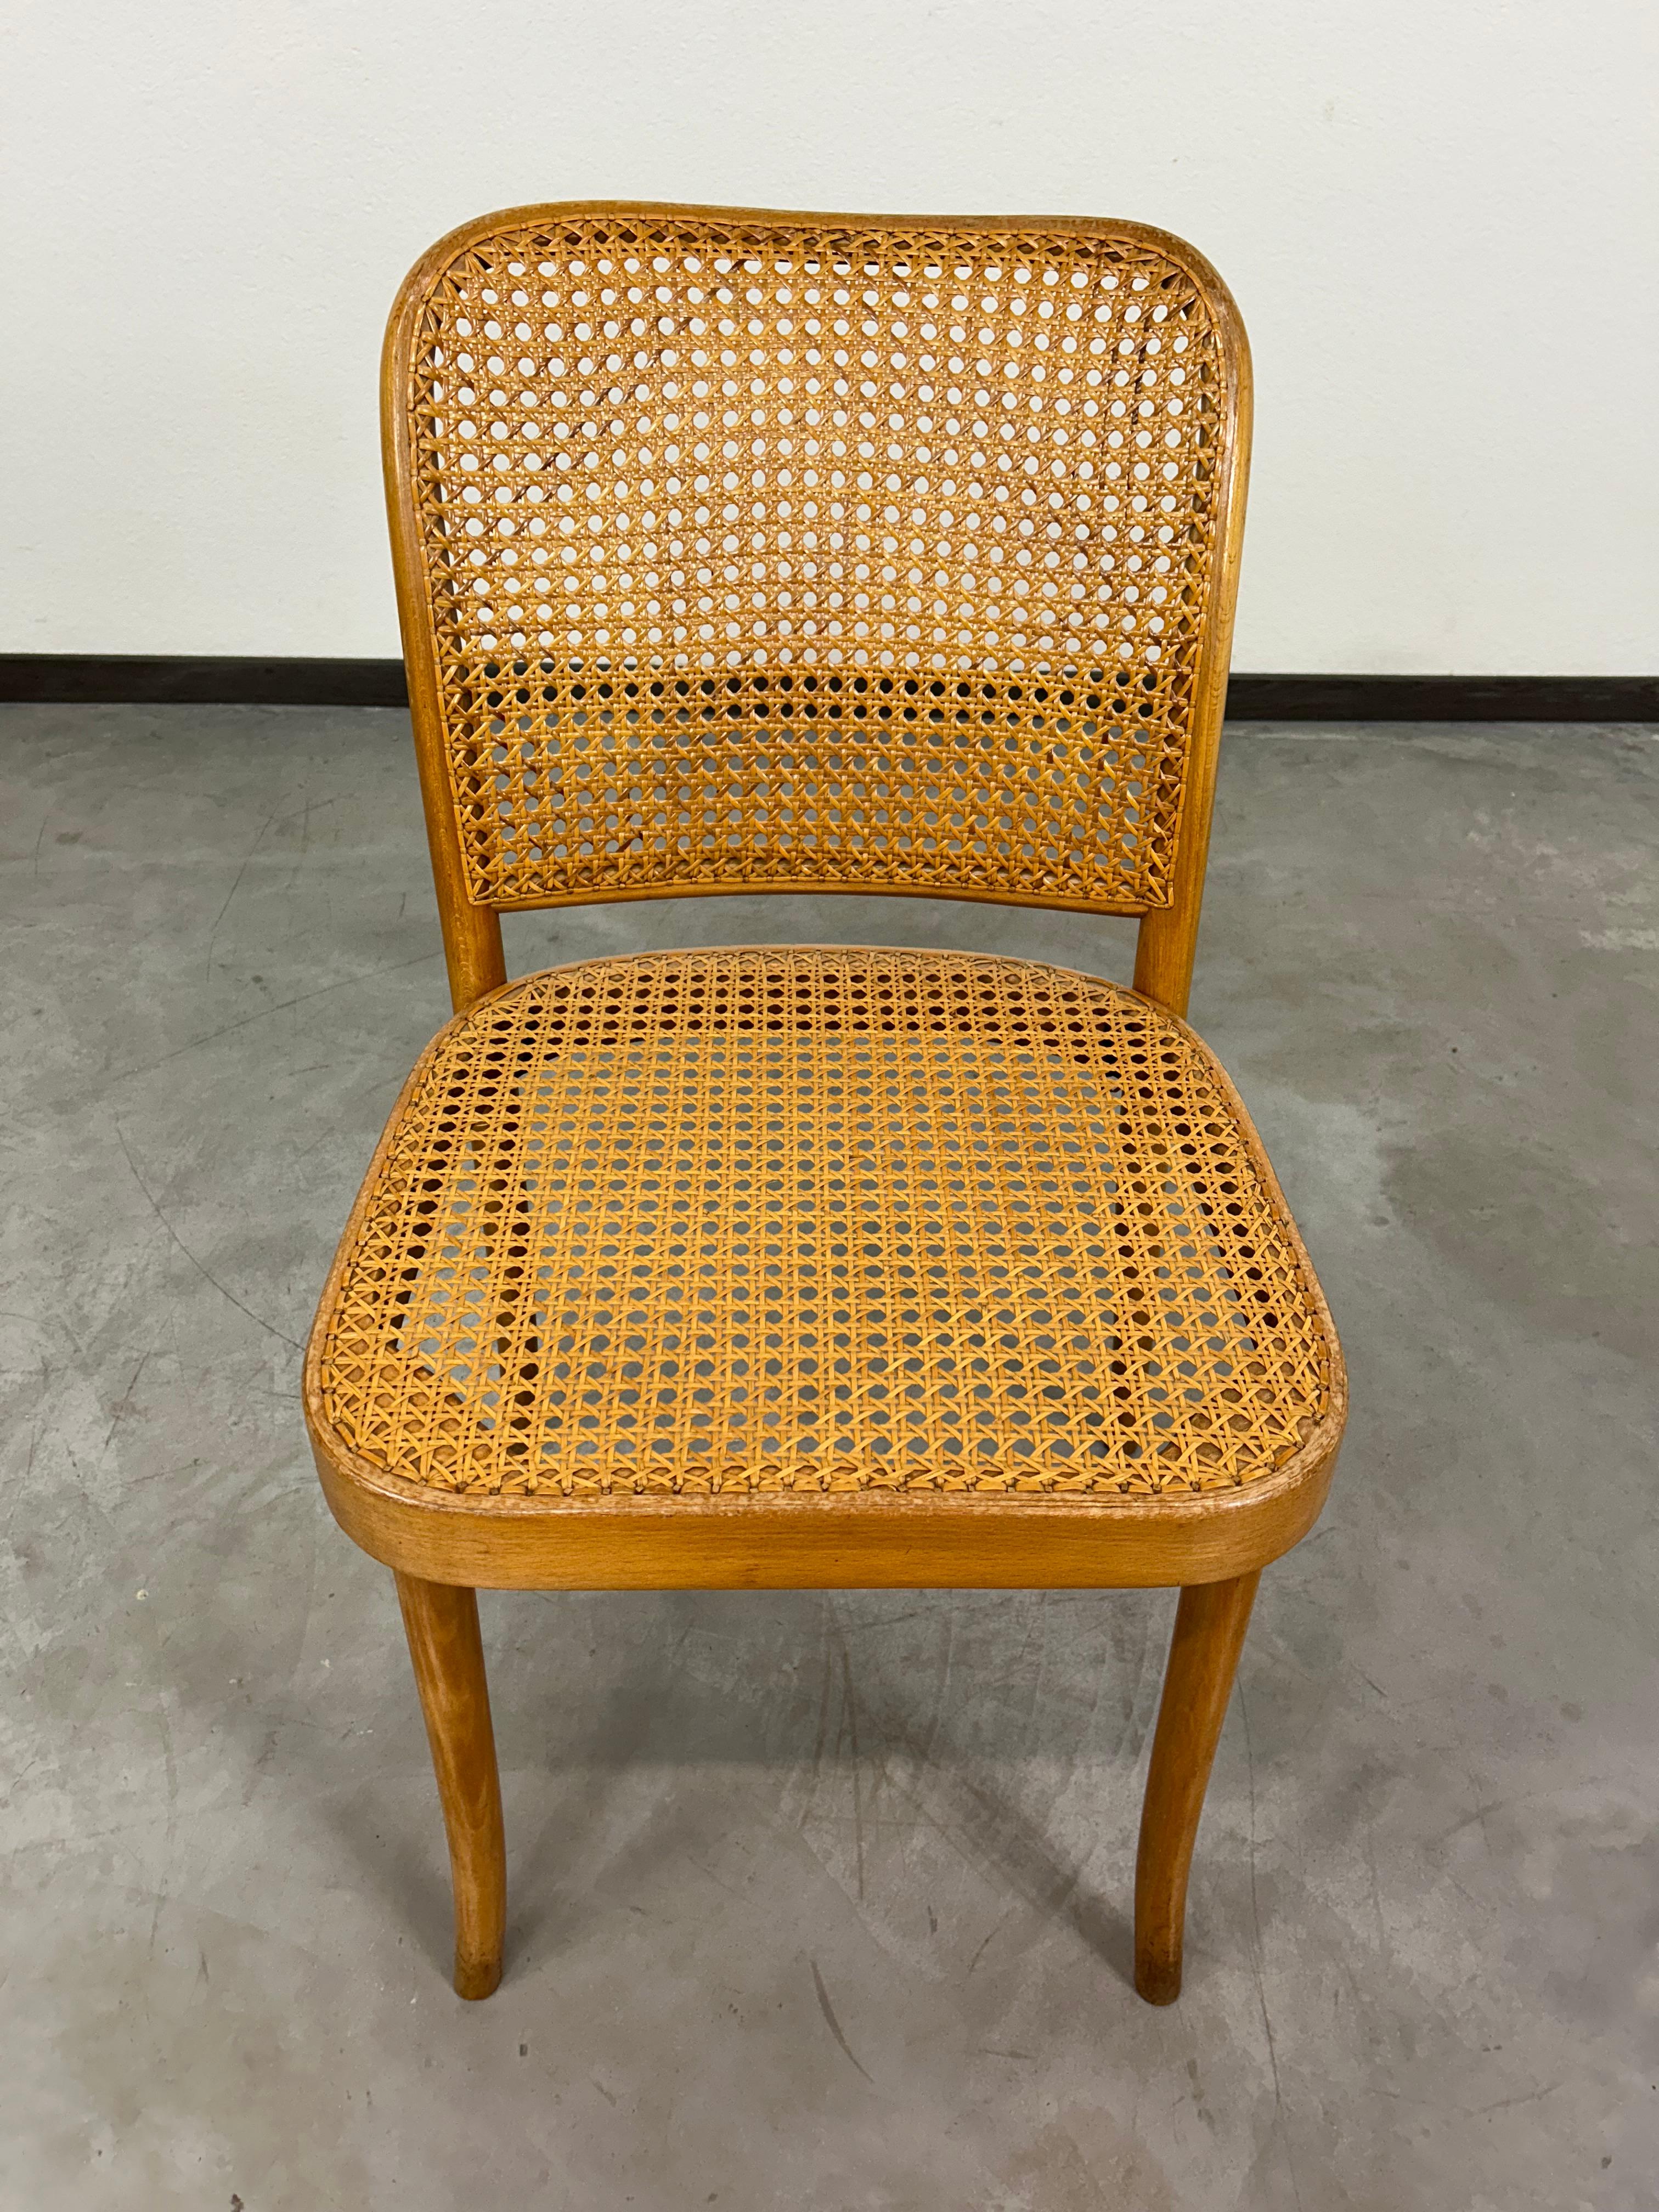 Czech Bauhaus chair no.811 by Josef Hoffmann For Sale